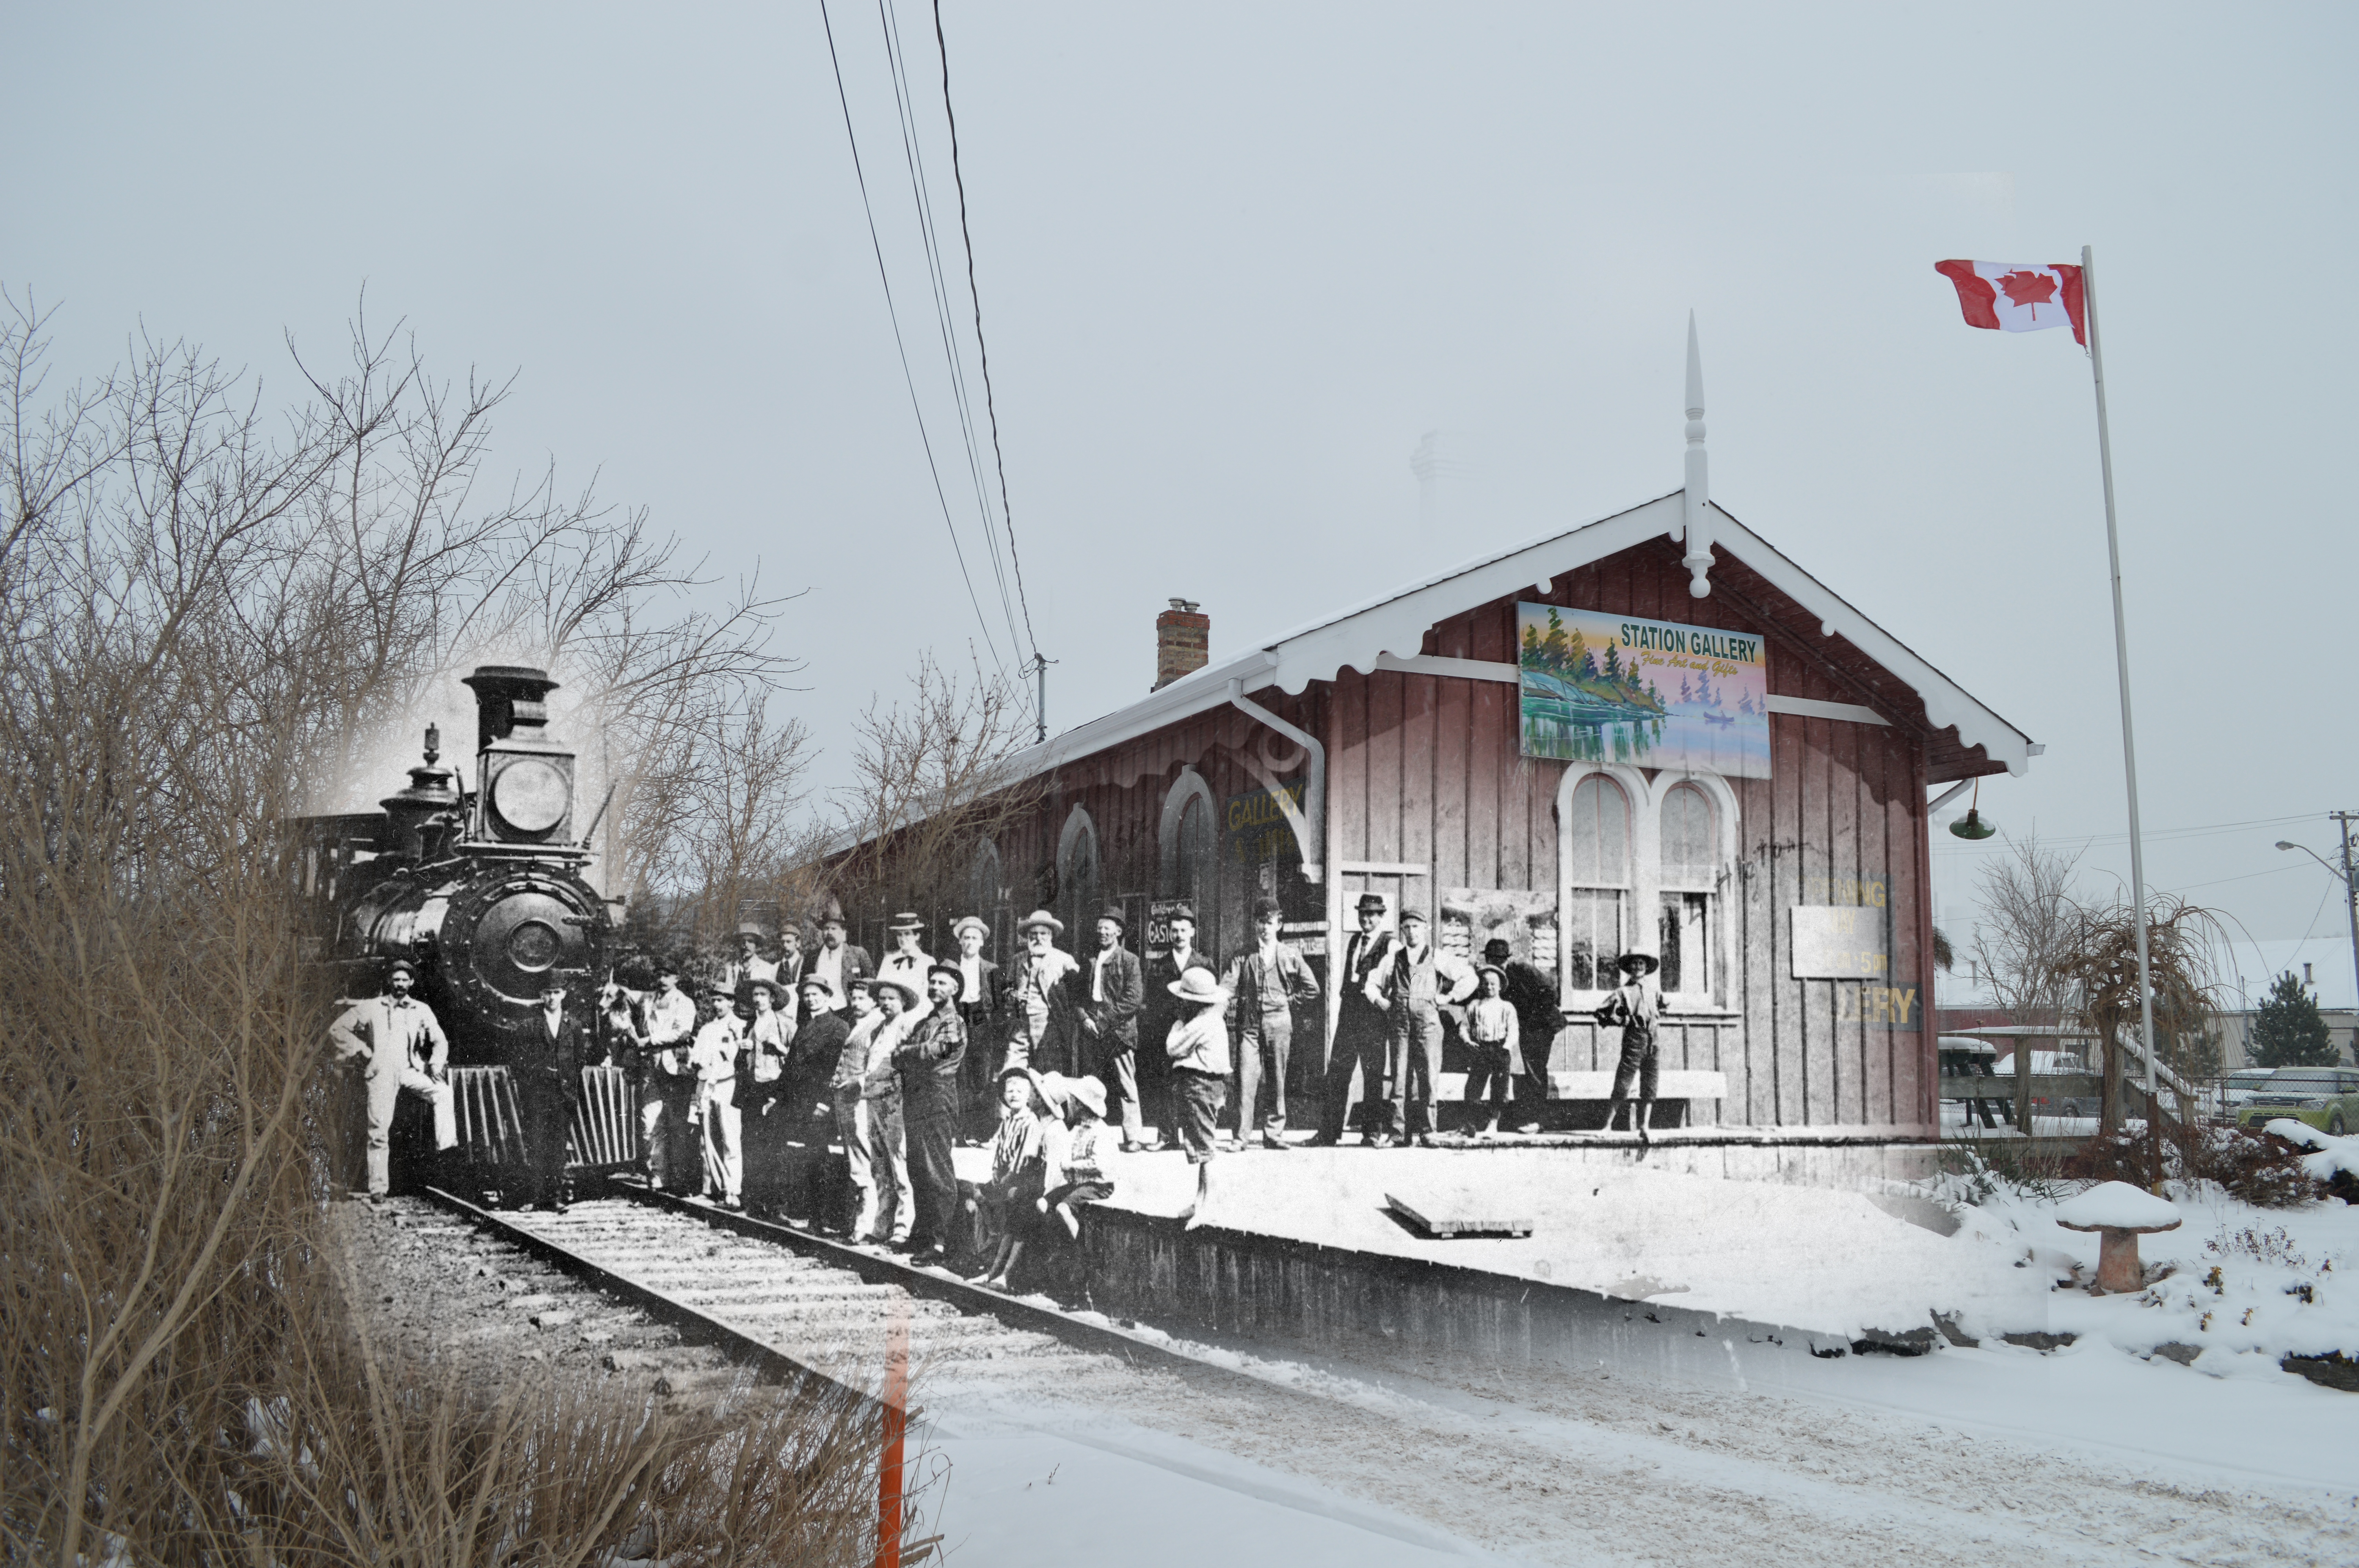 Une photo en noir et blanc d'un train et d'une foule de gens superposée à une image contemporaine de la gare.